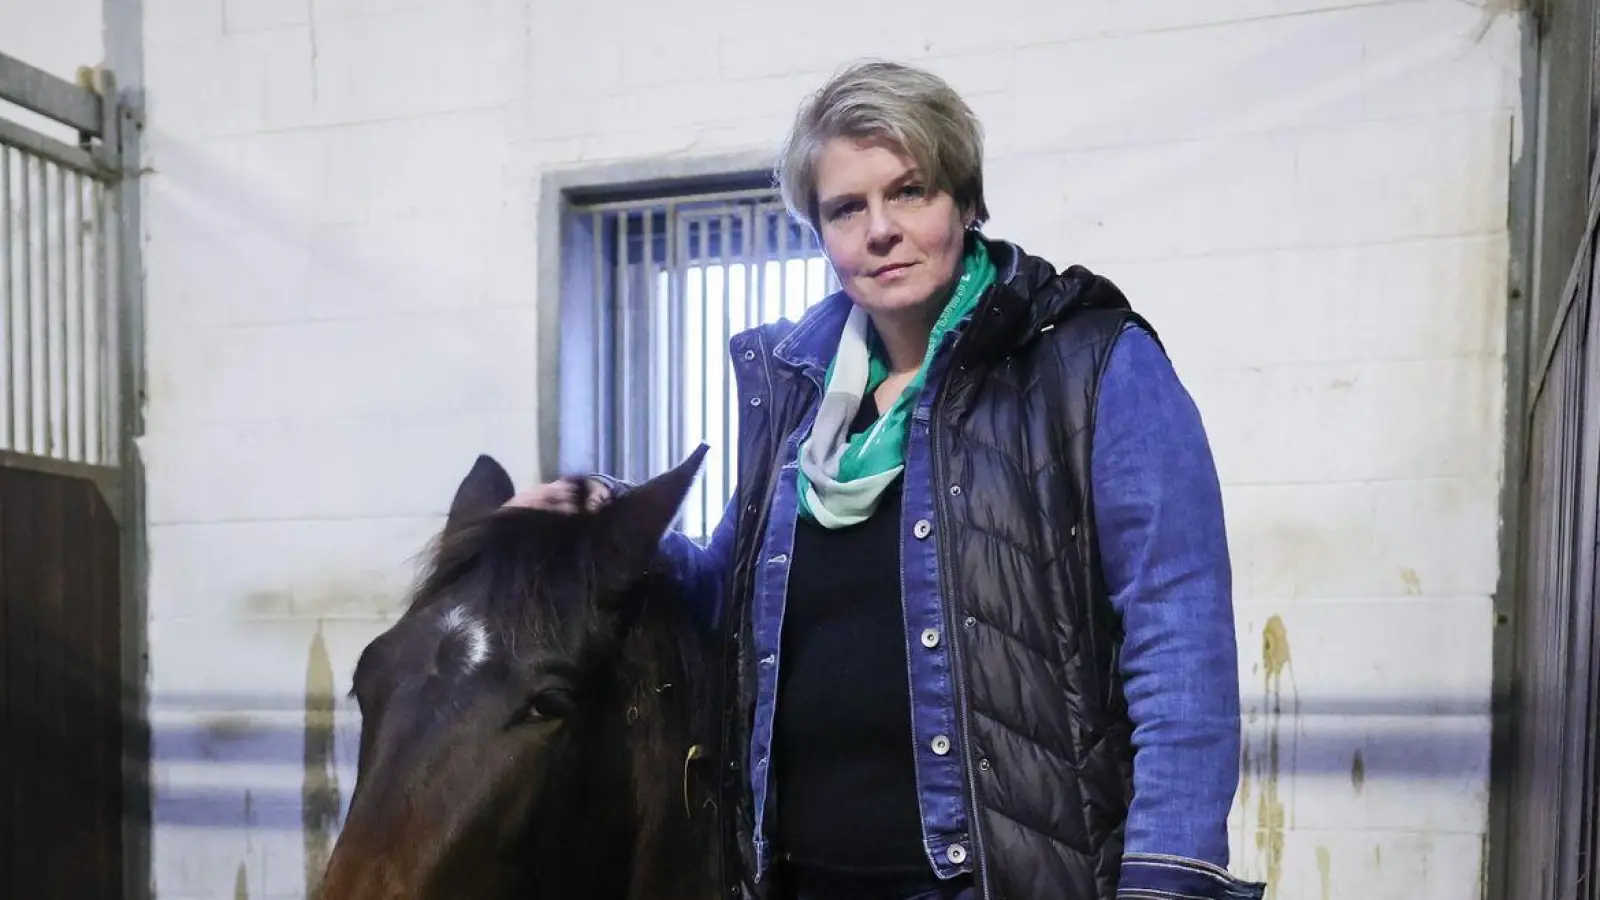 Nadine Wilkens, Landwirtin und Inhaberin einer Pferdepension, hat ihre Tiere vor dem Hochwasser in Sicherheit gebracht. (Foto: Christian Charisius/dpa)